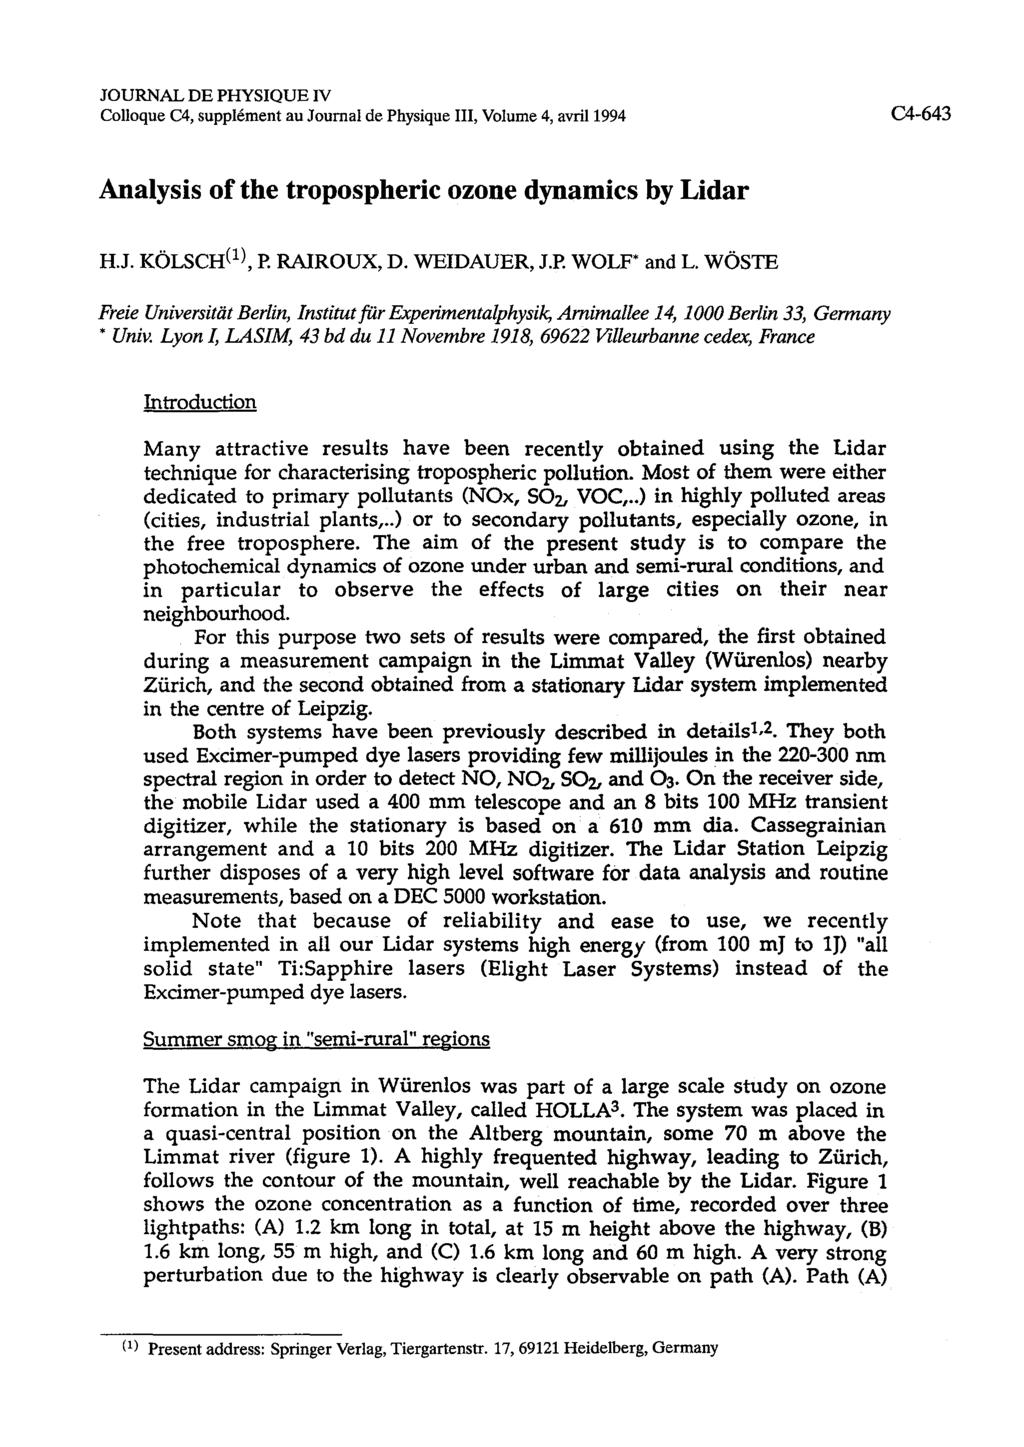 JOURNAL DE PHYSIQUE IV Colloque C4, supplcment au Journal de Physique 111, Volume 4, avril1994 Analysis of the tropospheric ozone dynamics by Lidar H.J. KOLSCH('), P. RAIROUX, D. WEIDAUER, J.P. WOLF* and L.